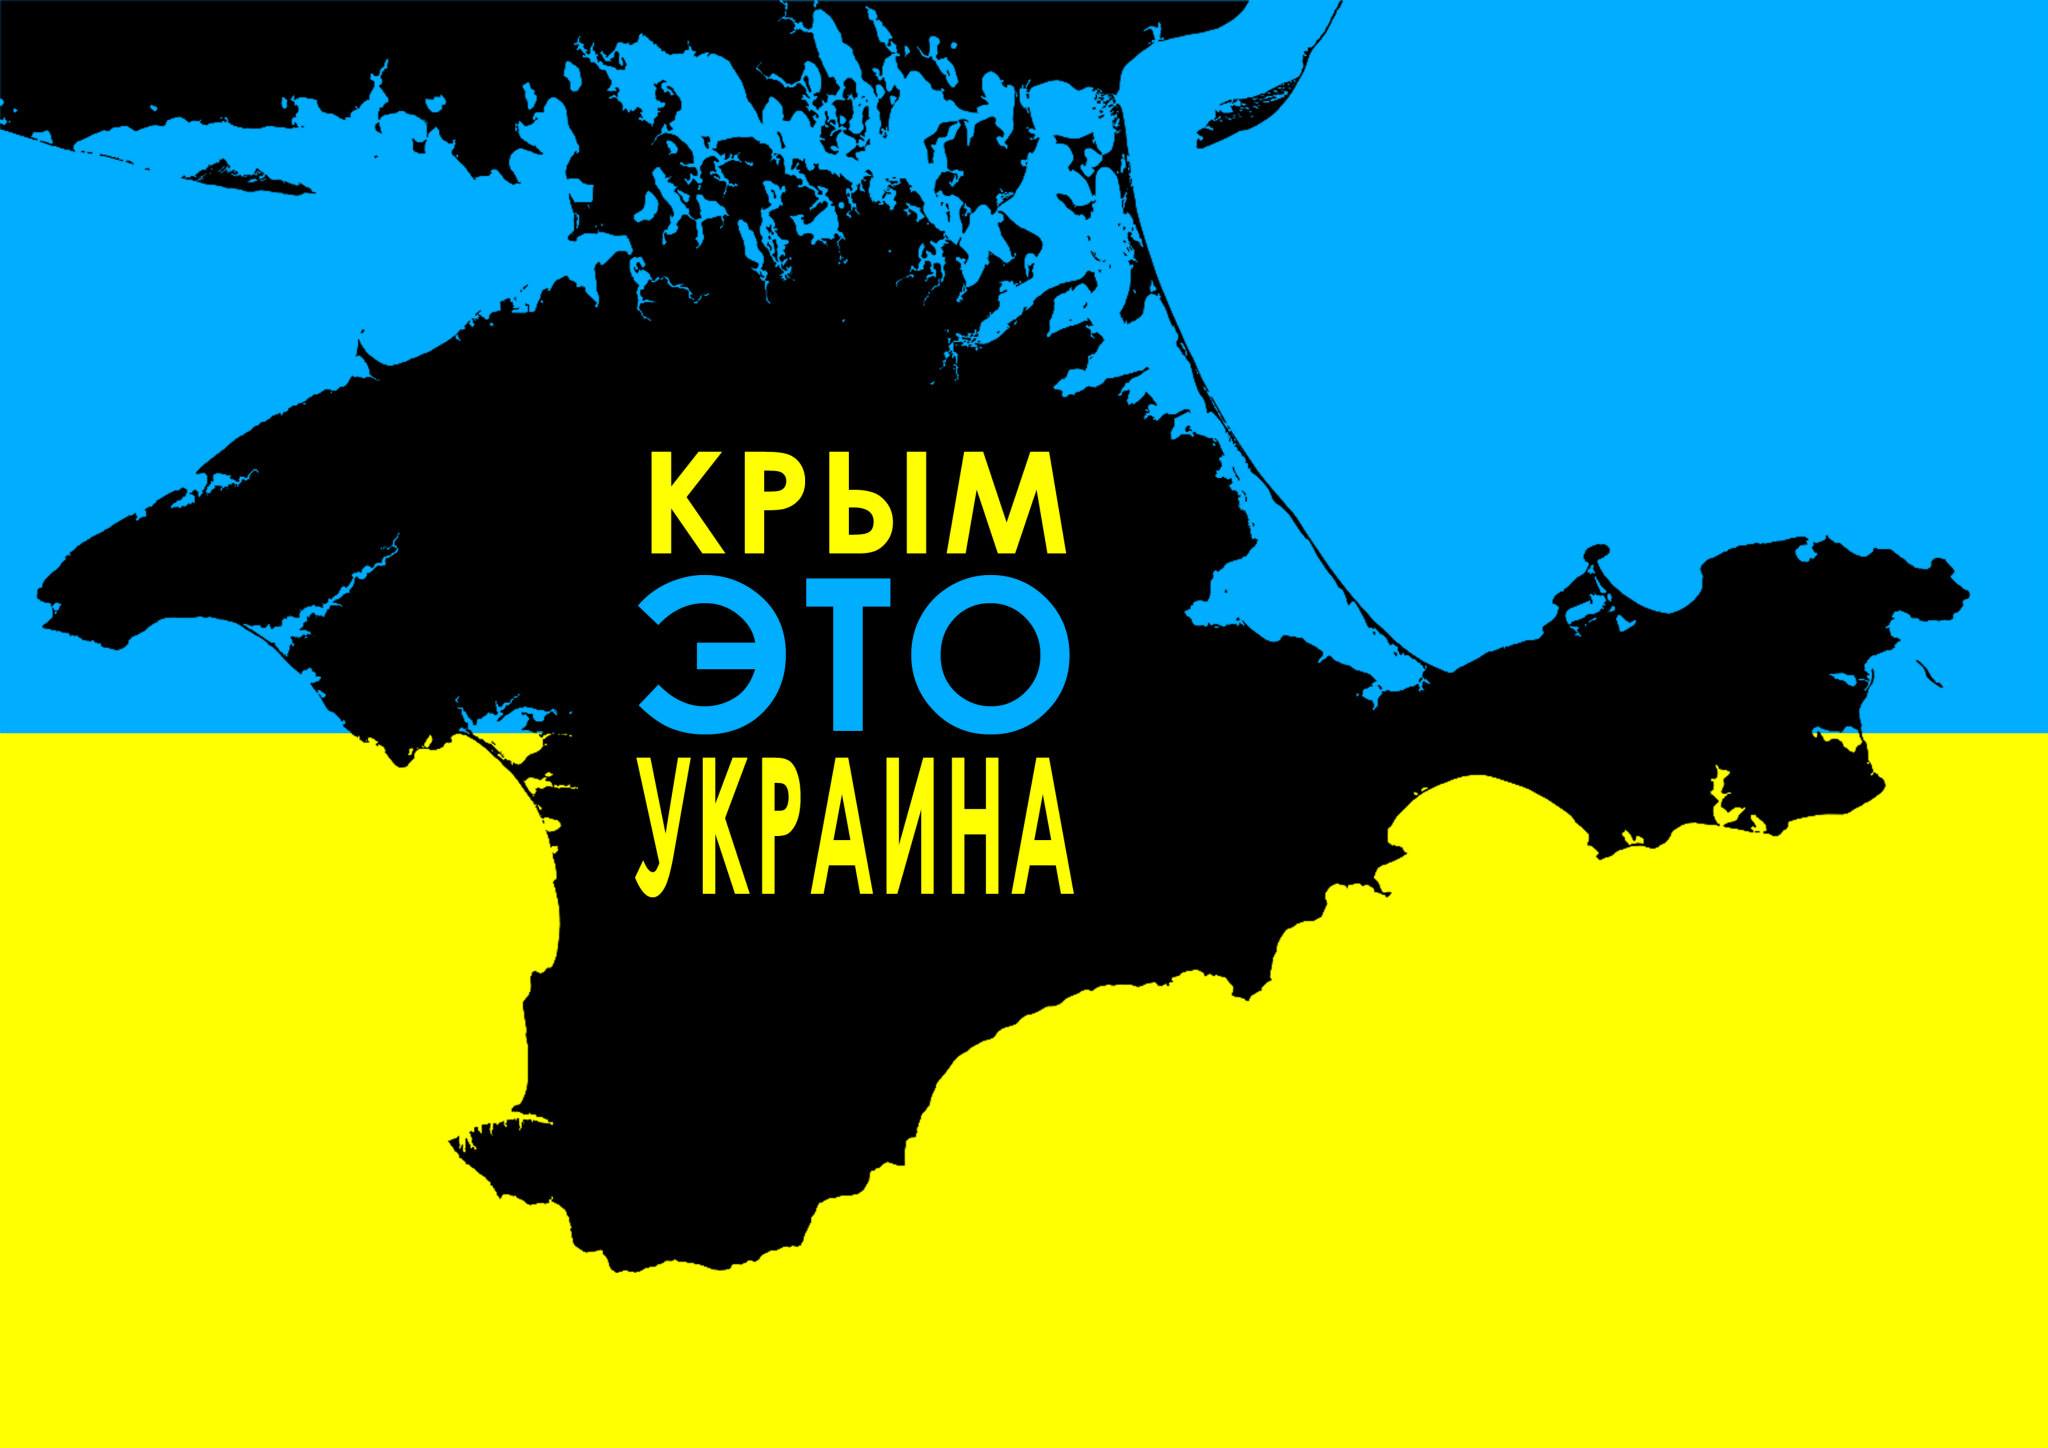 Потерянный Крым: в Украине торгуют картами с “российским” полуостровом